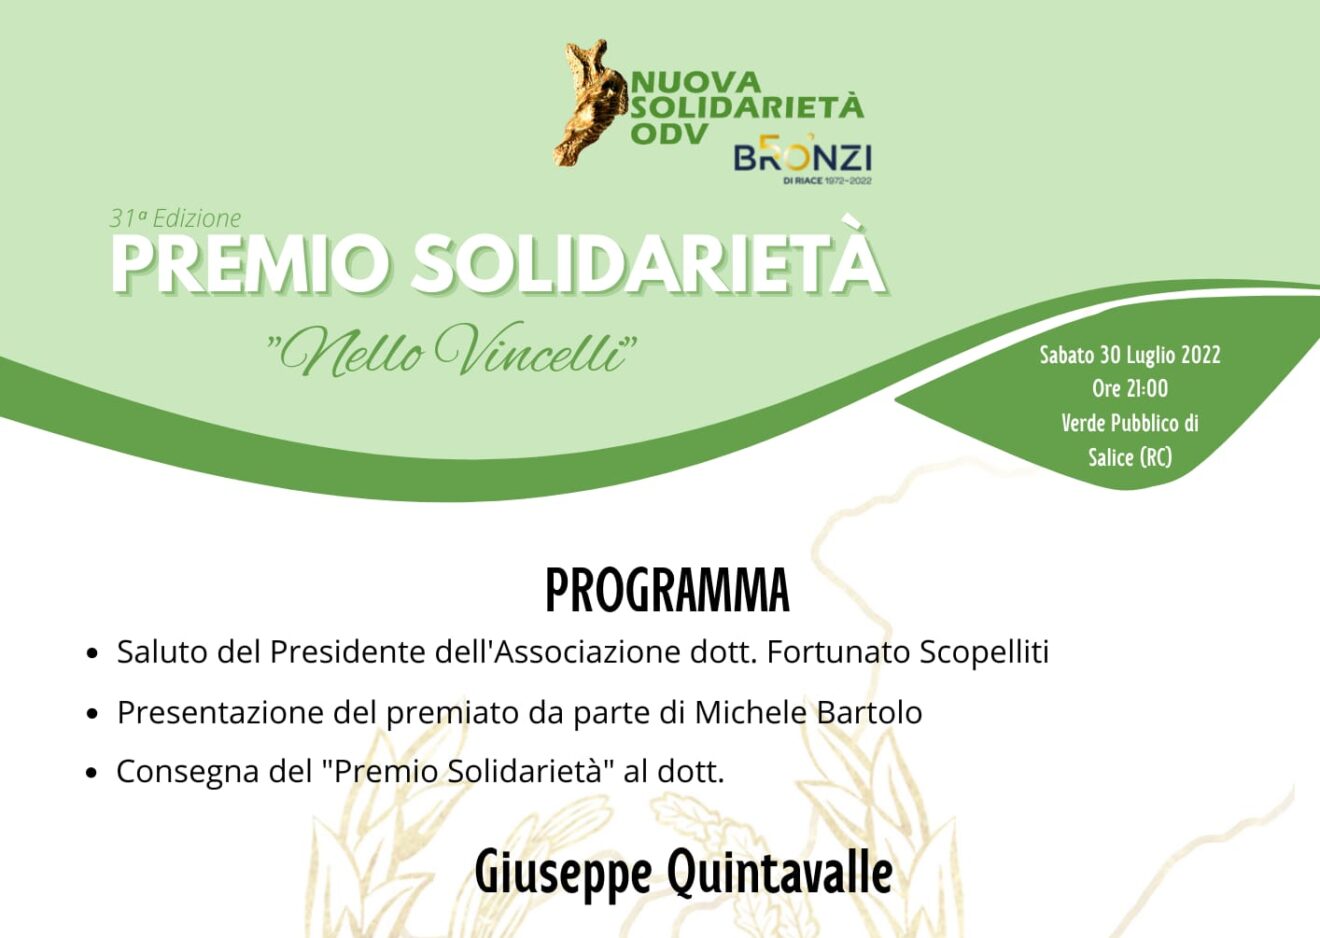 Sabato 30 luglio il Premio Solidarietà ‘Nello Vincelli’  Sarà premiato Giuseppe Quintavalle, medico e direttore dell’Azienda sanitaria del Lazio